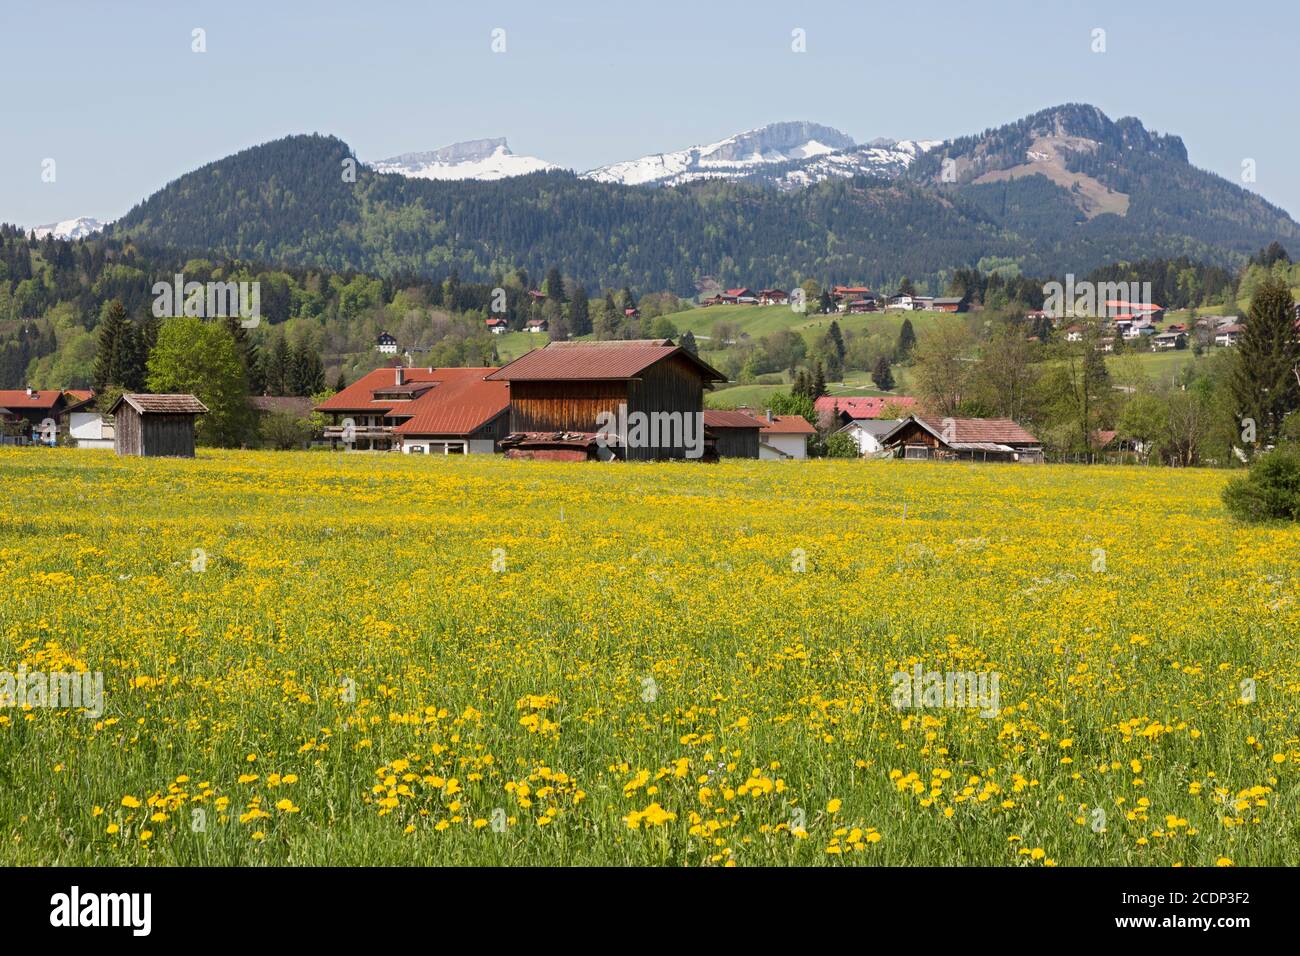 Oberstdorf, Allgäu, Wiesen, Berge, Landschaft, Häuser, Ortschaft Stock Photo